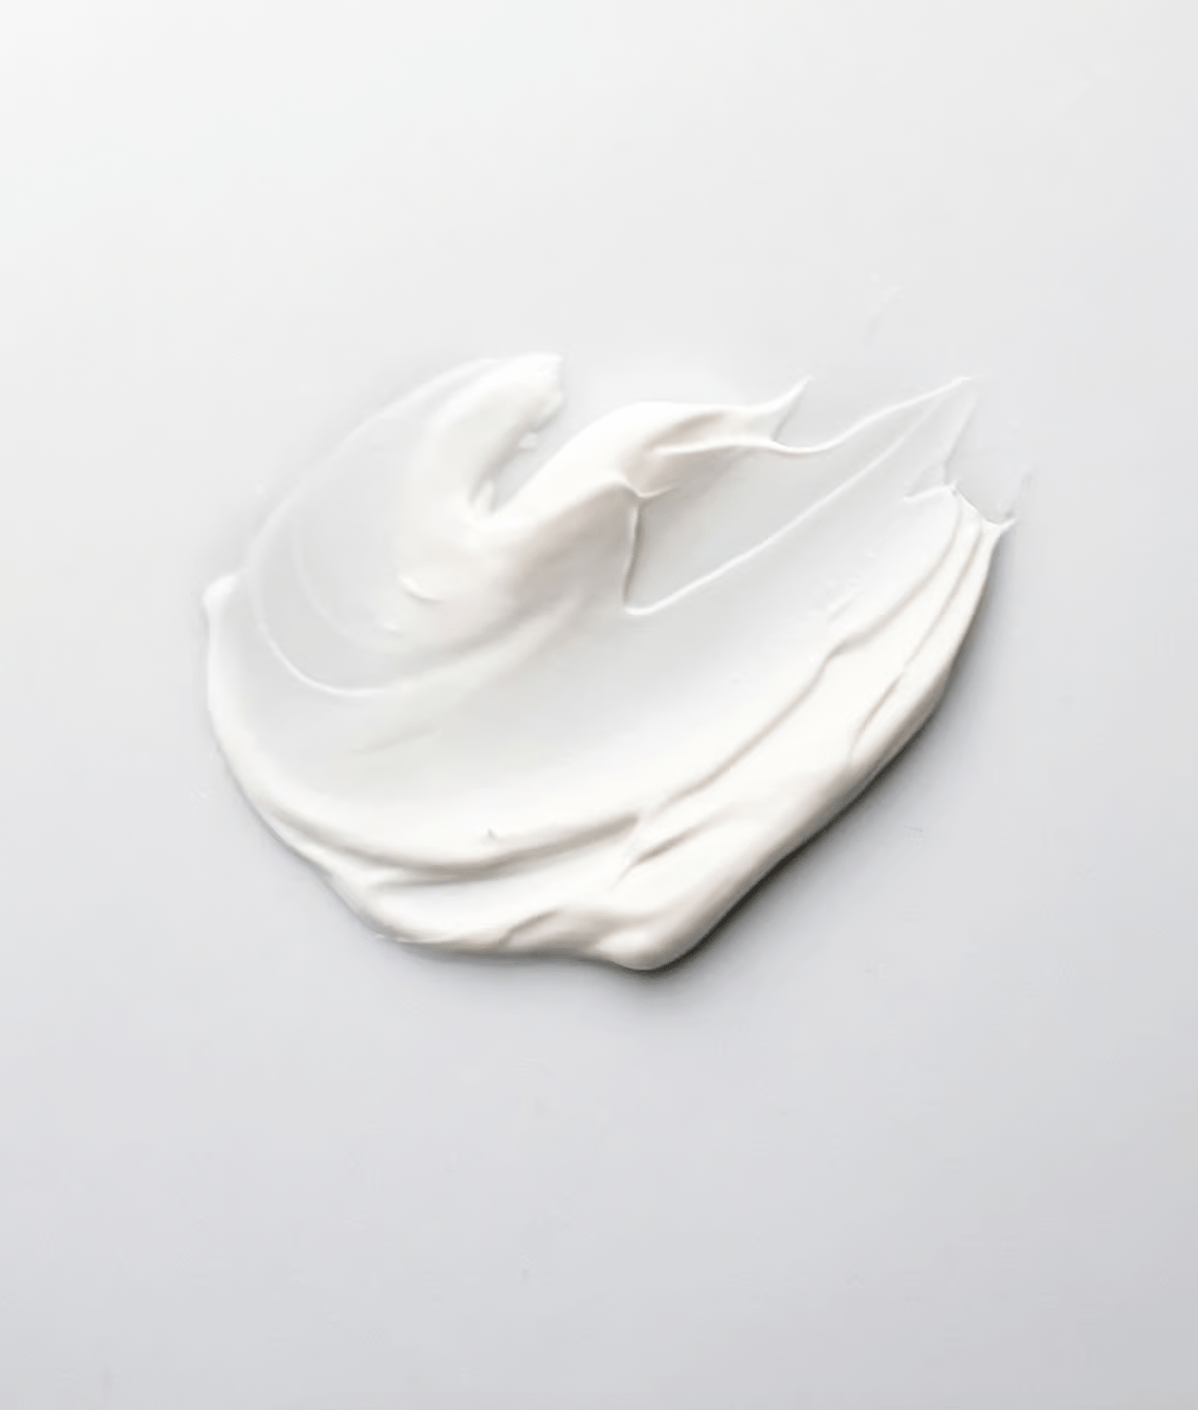 Special Regulating Cream - 50ml